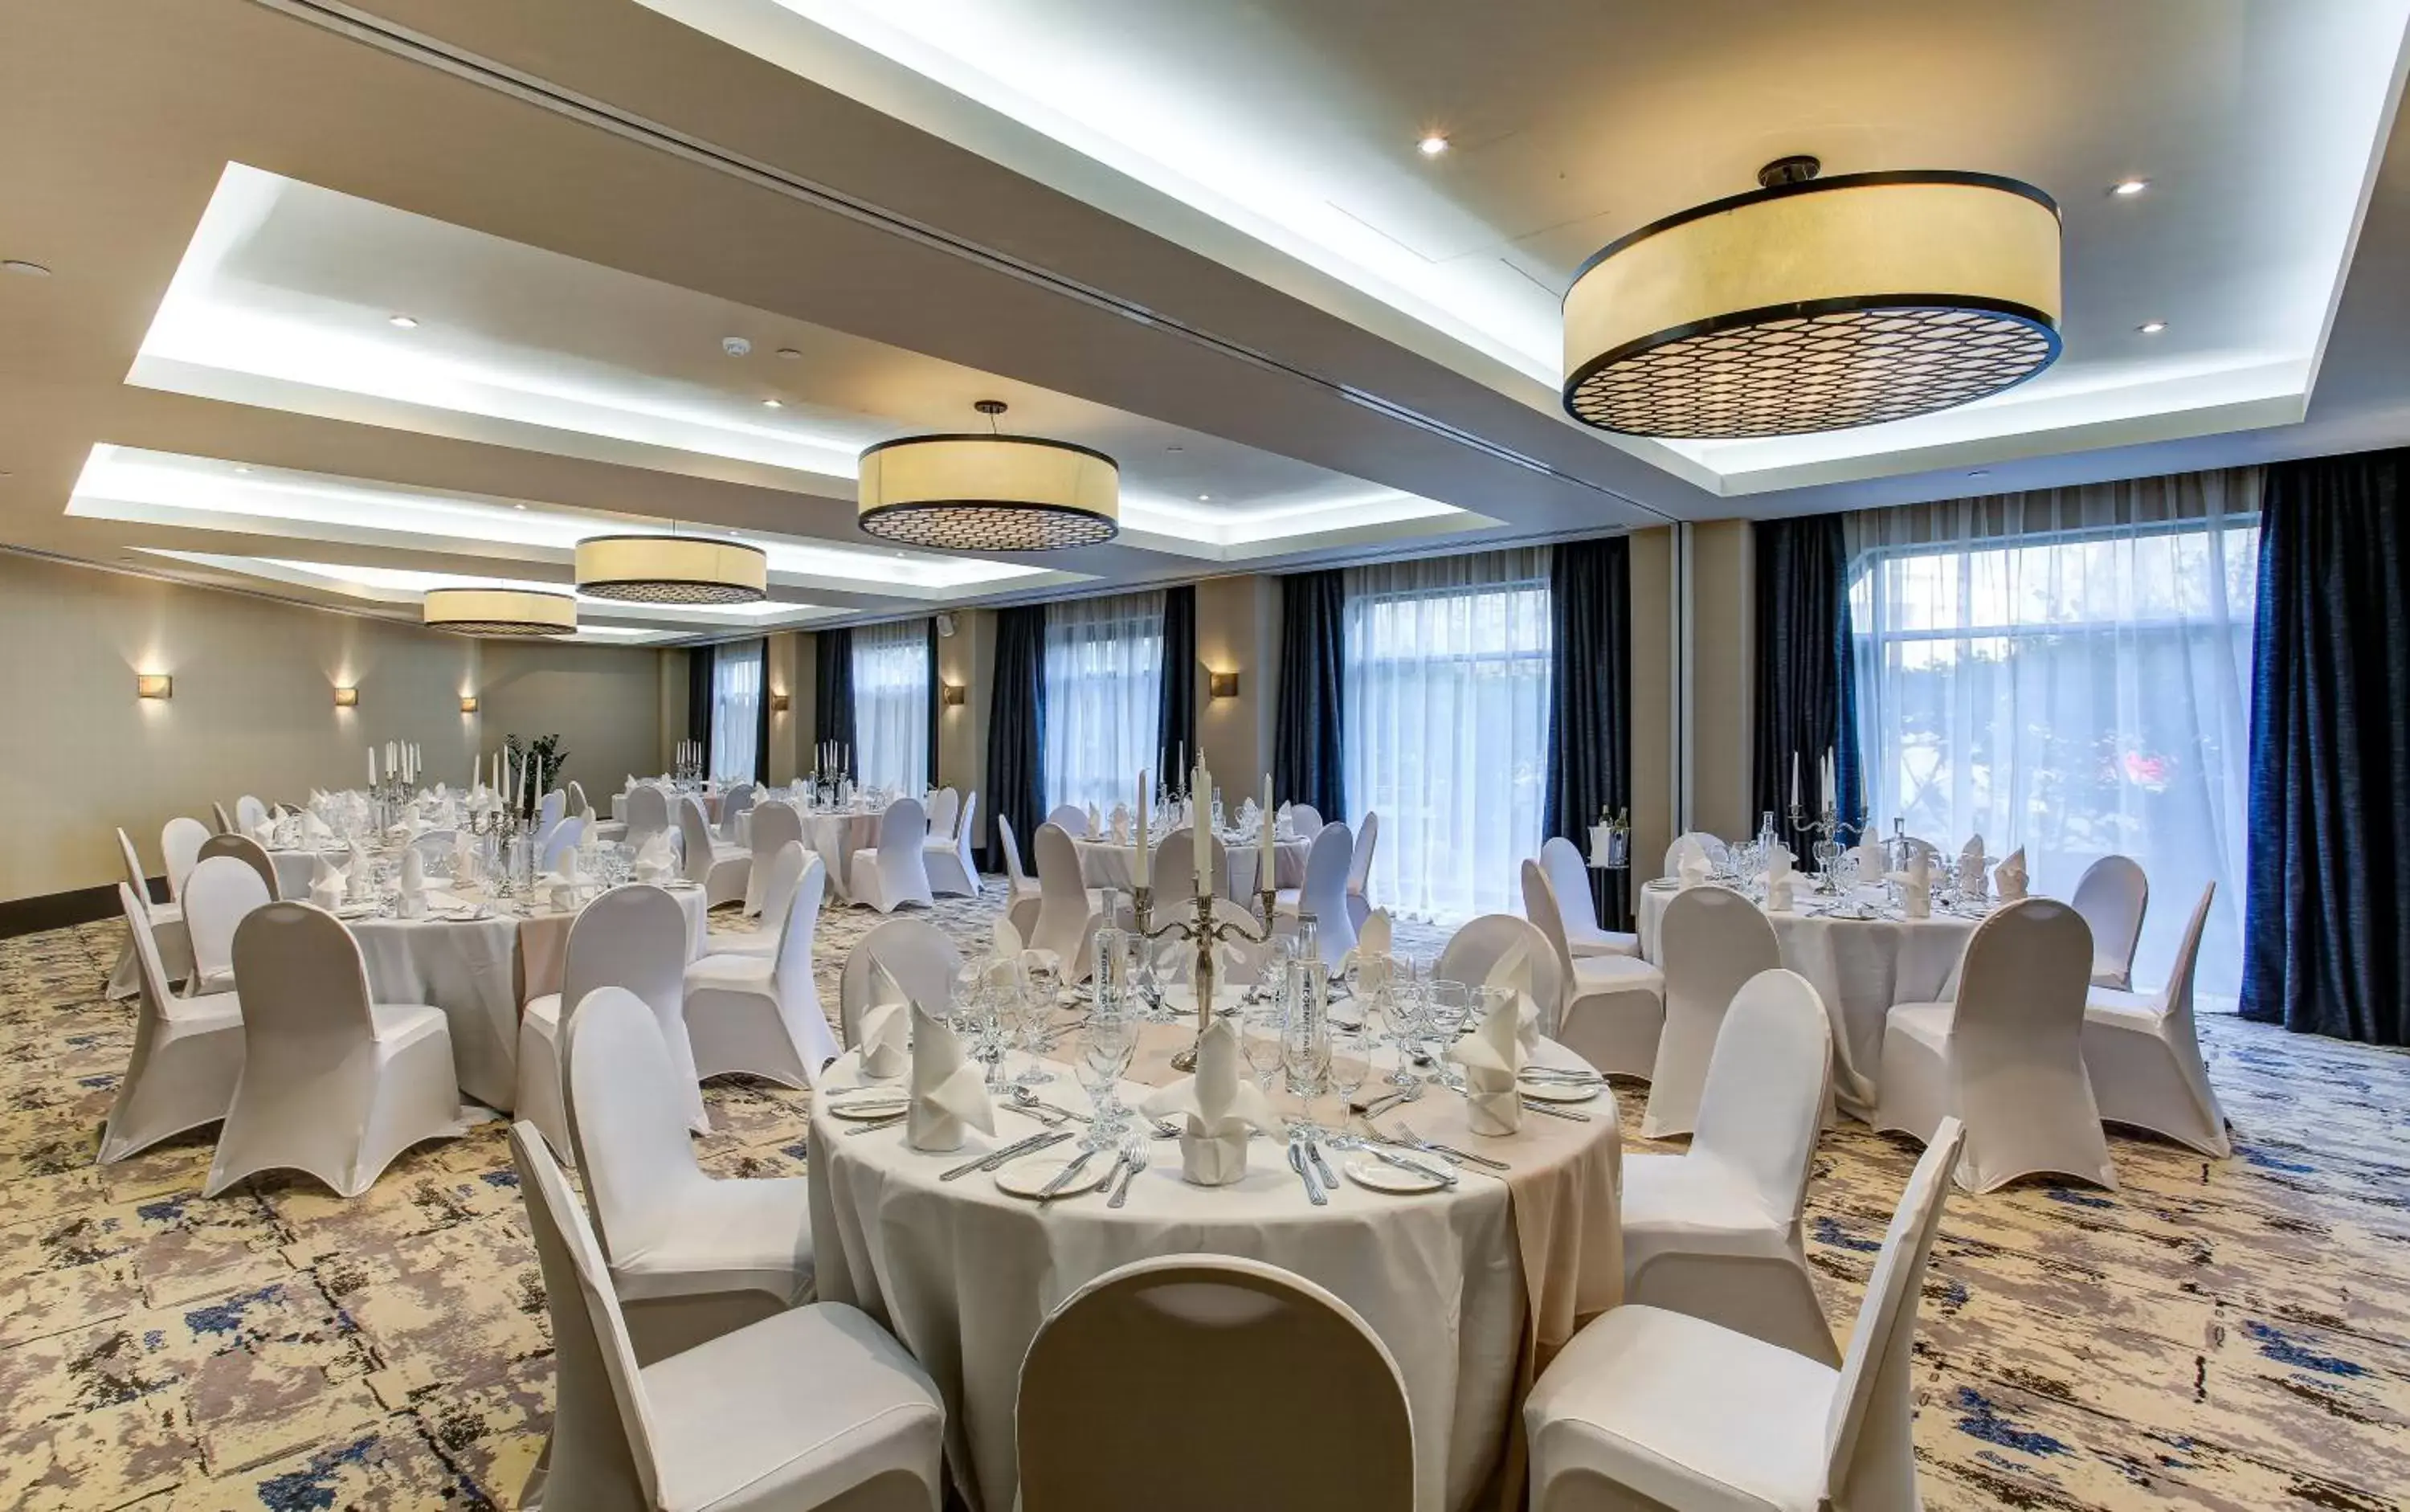 Banquet/Function facilities, Banquet Facilities in Danubius Hotel Regents Park